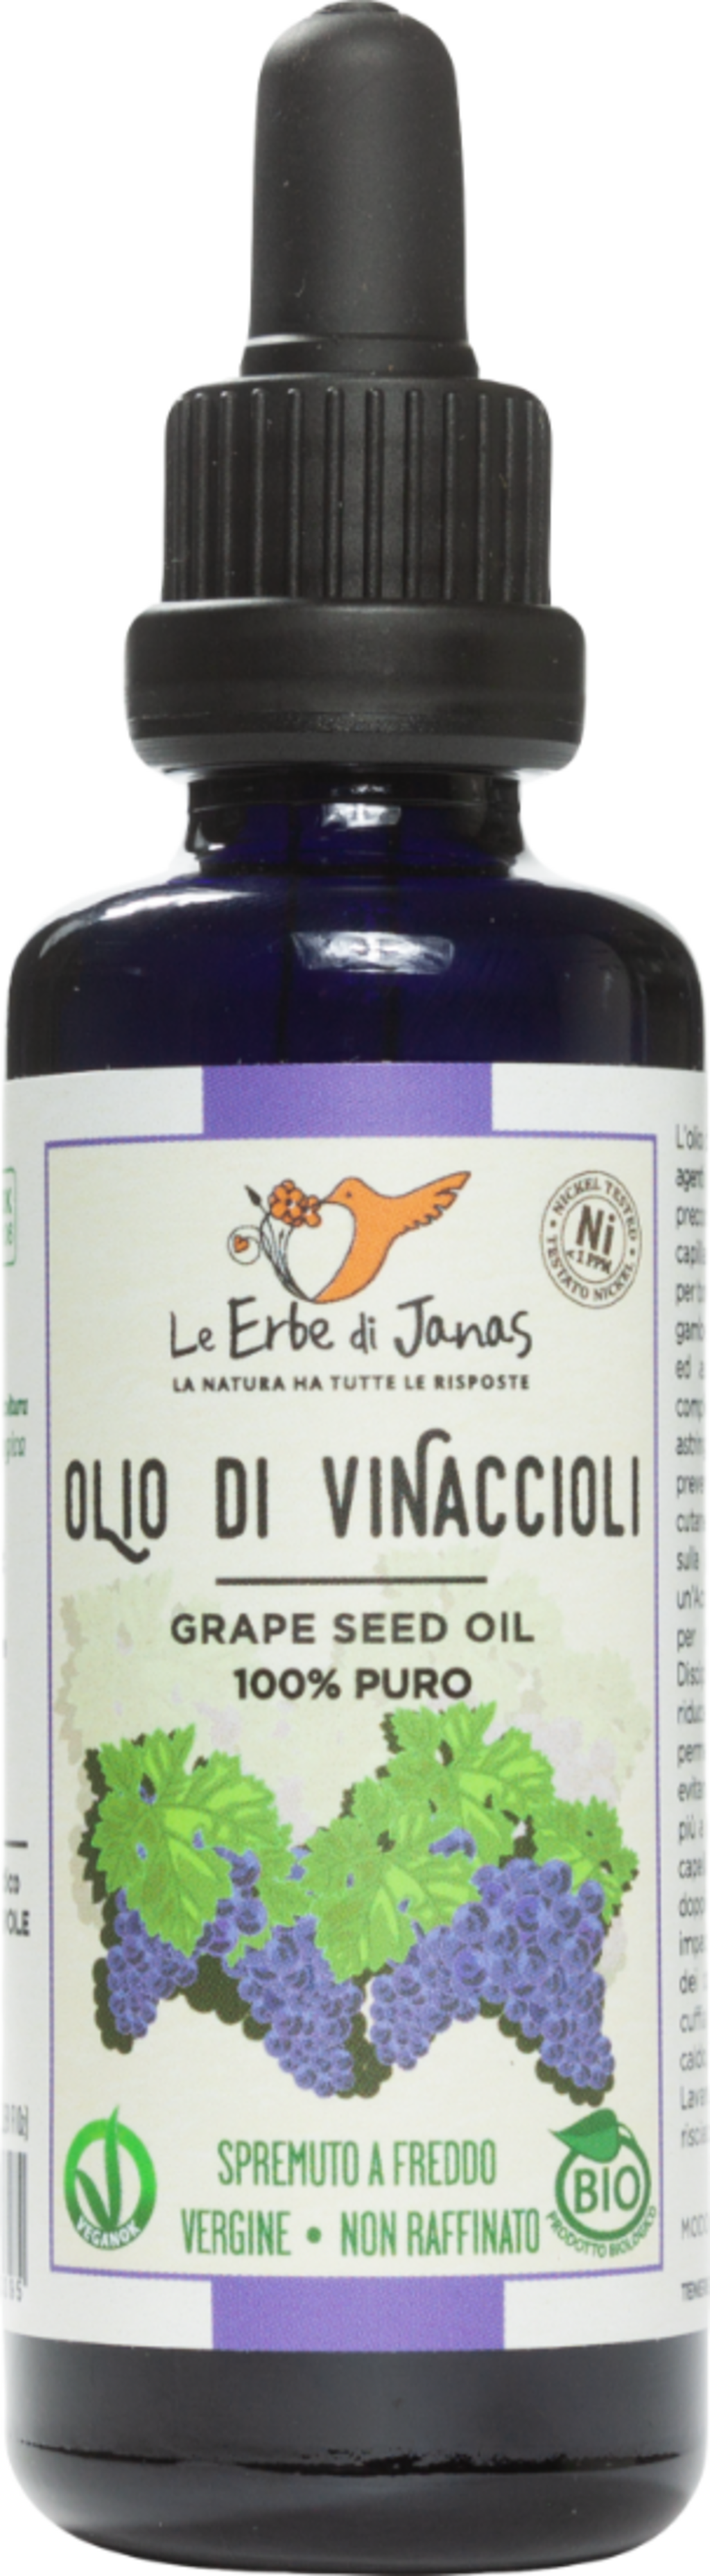 Le Erbe di Janas Grape Seed Oil - 50 ml